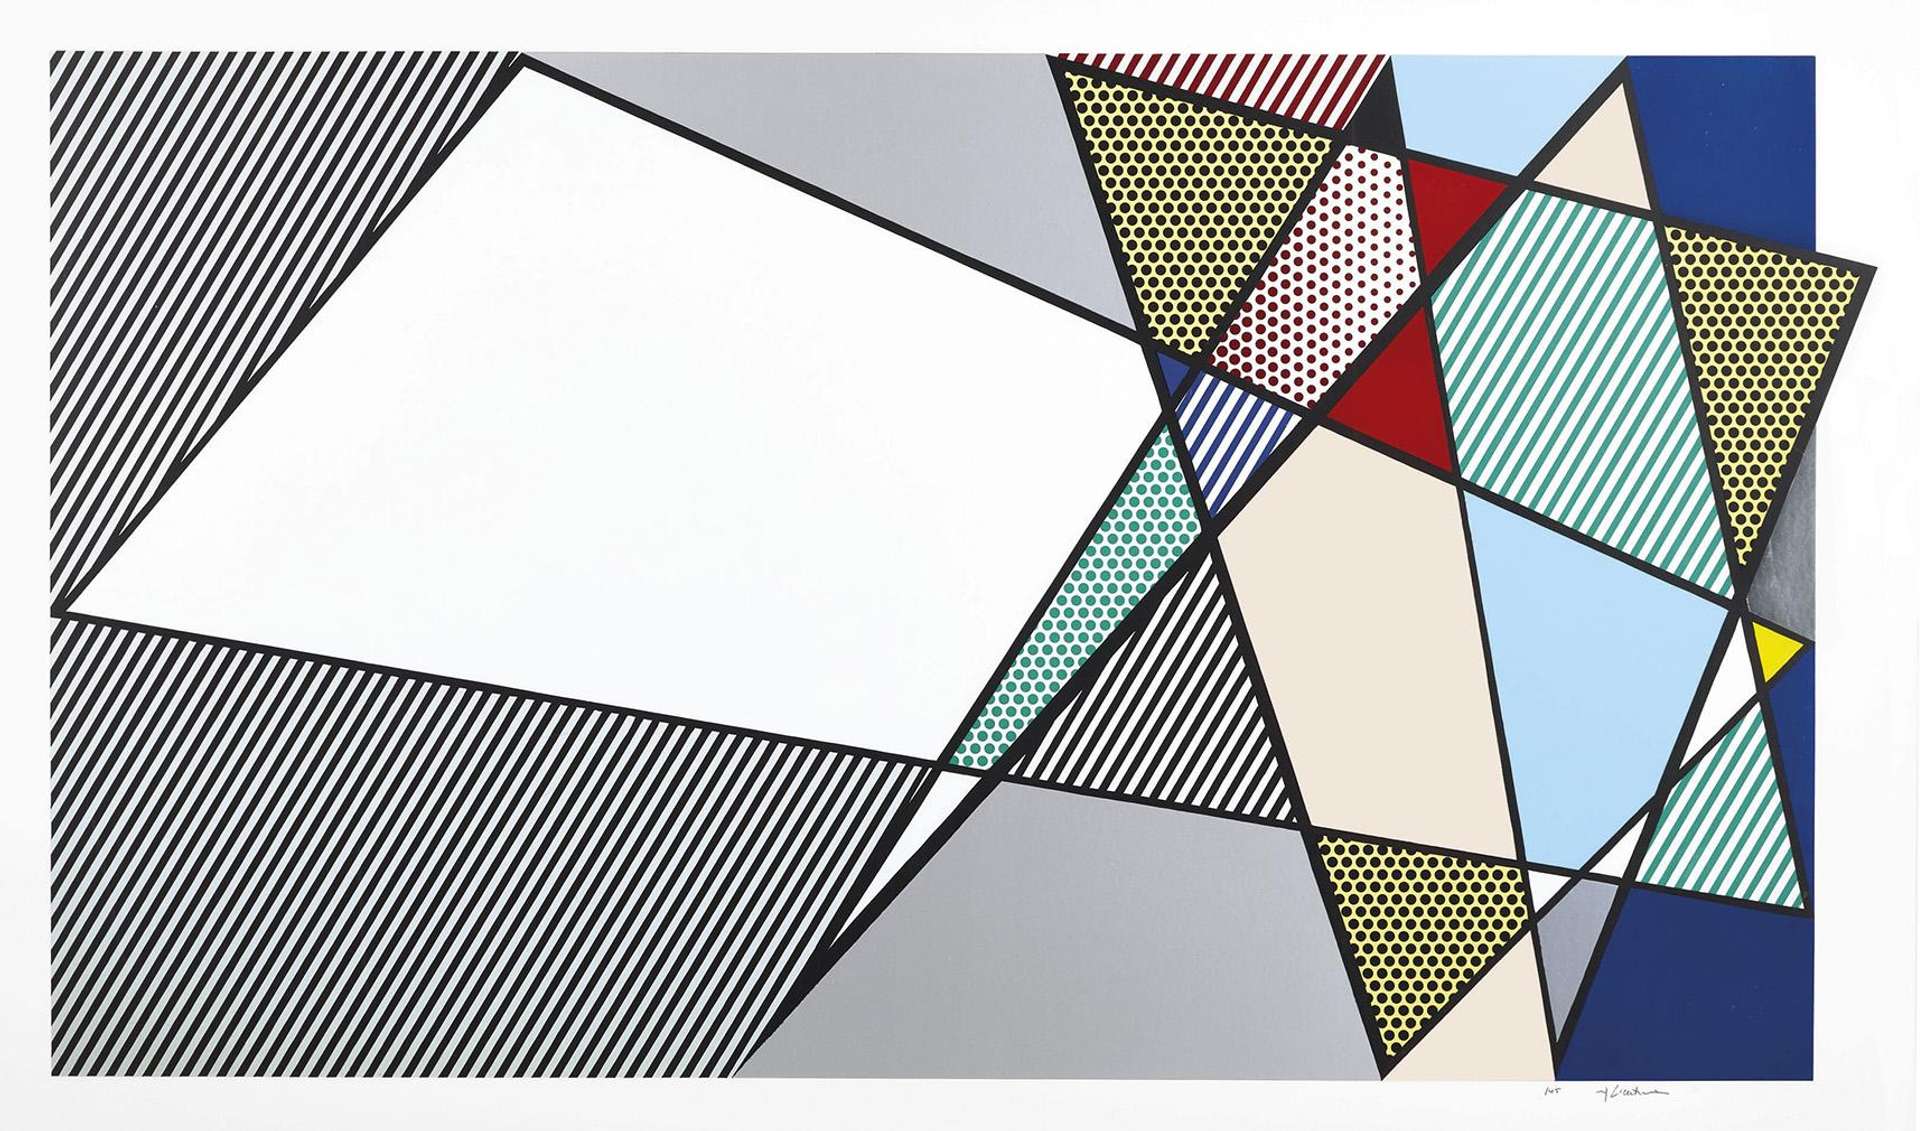 Imperfect 58" X 92 3/8" by Roy Lichtenstein